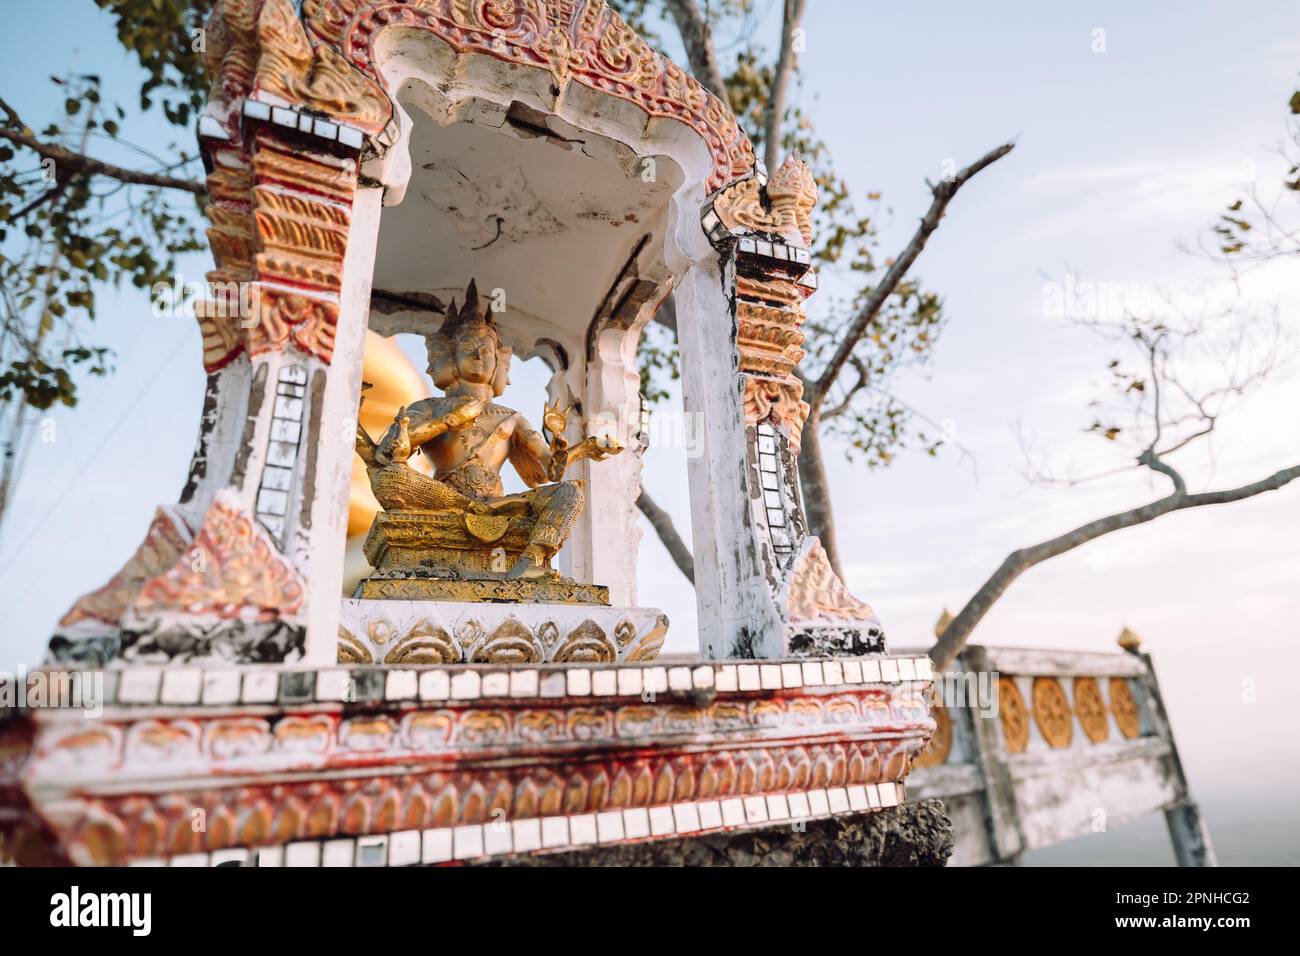 Bouddhisme Bouddha Temple Statue religion couleurs d'or tranquillité d'esprit Asie du Sud-est Banque D'Images